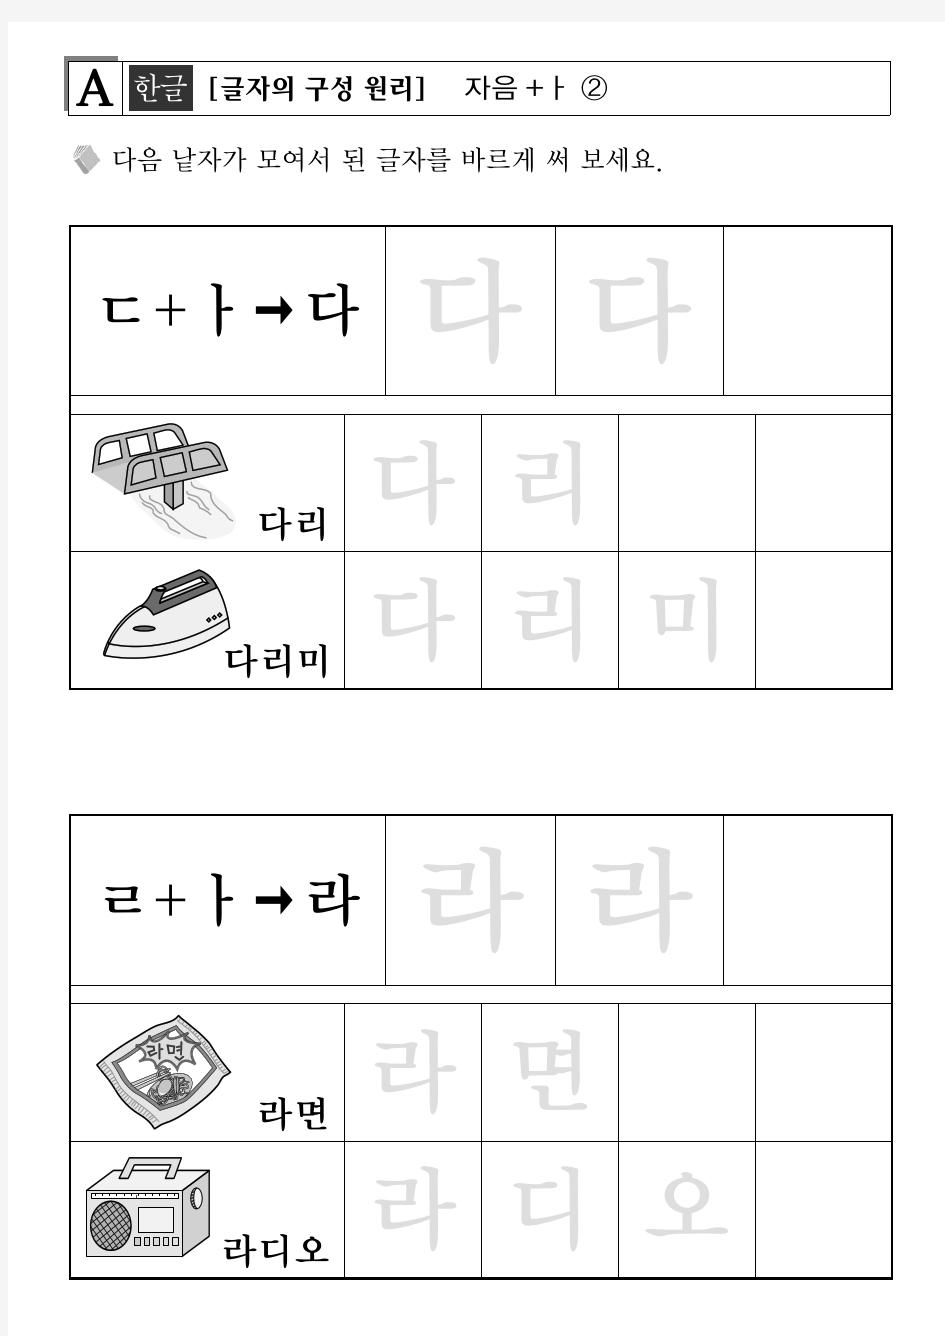 可打印练习写韩文韩语辅音母音